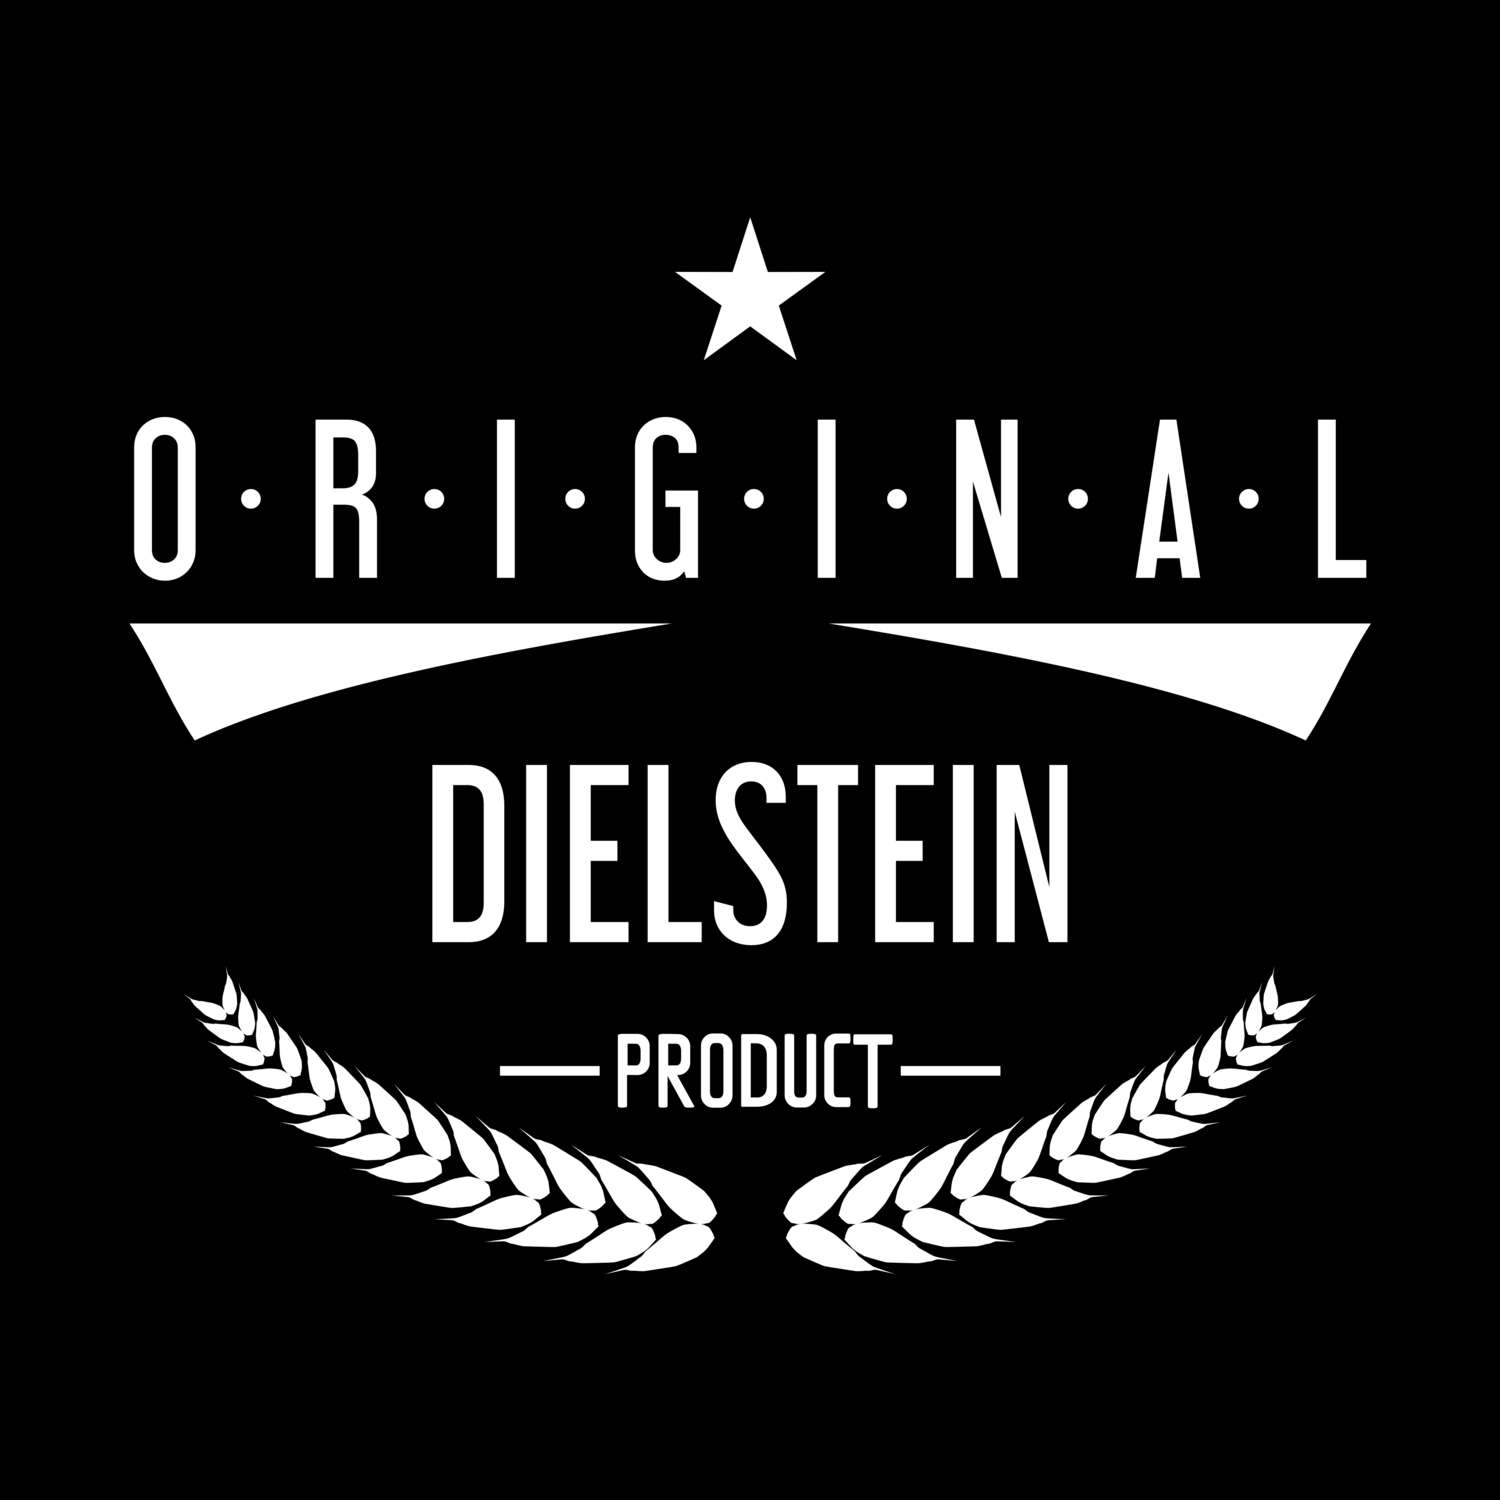 Dielstein T-Shirt »Original Product«